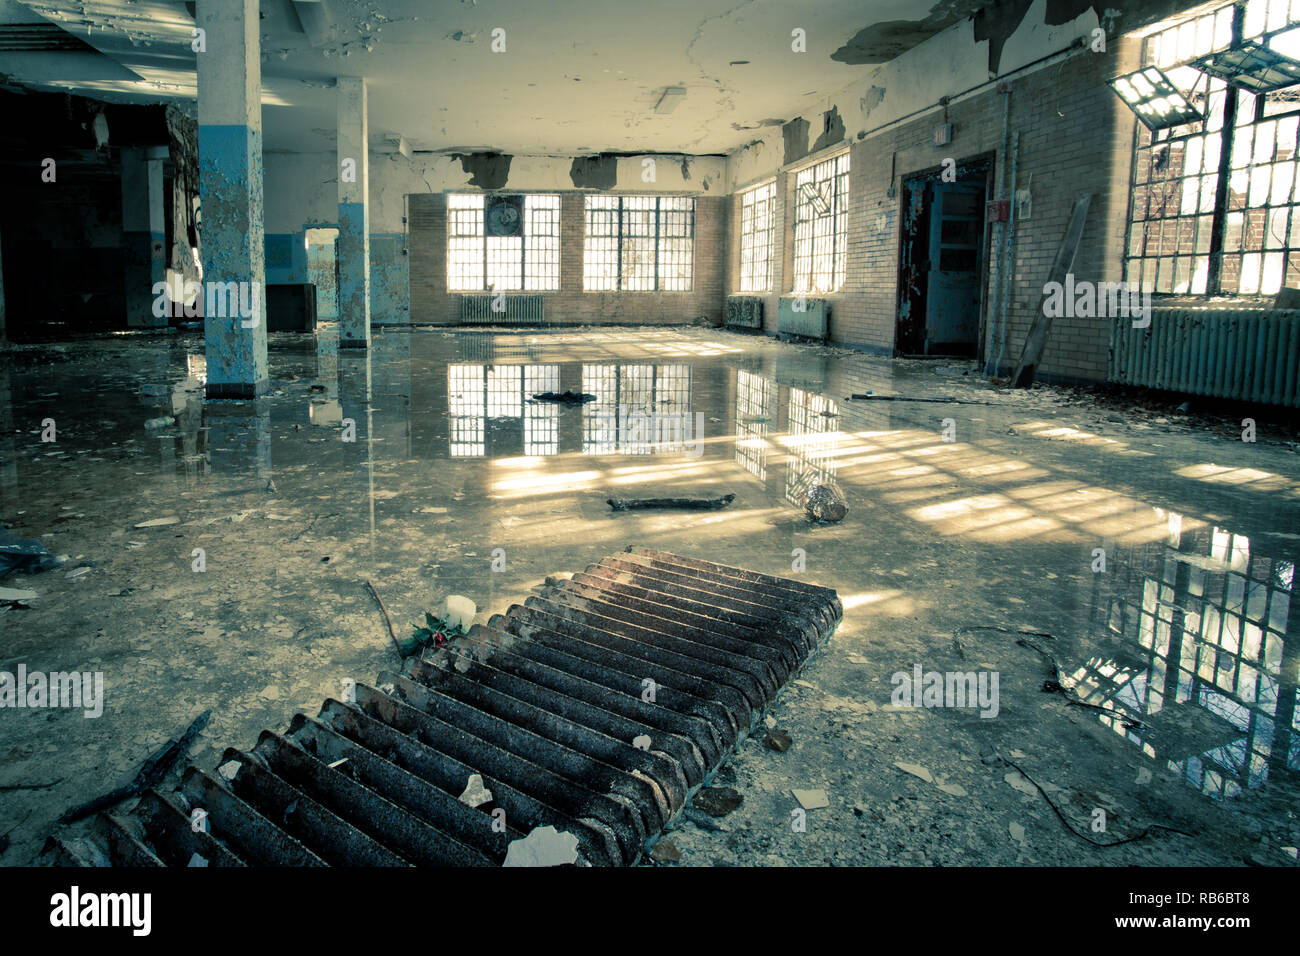 El interior del abandonado hospital psiquiátrico con ventanas rotas y las inundaciones de agua en el suelo Foto de stock